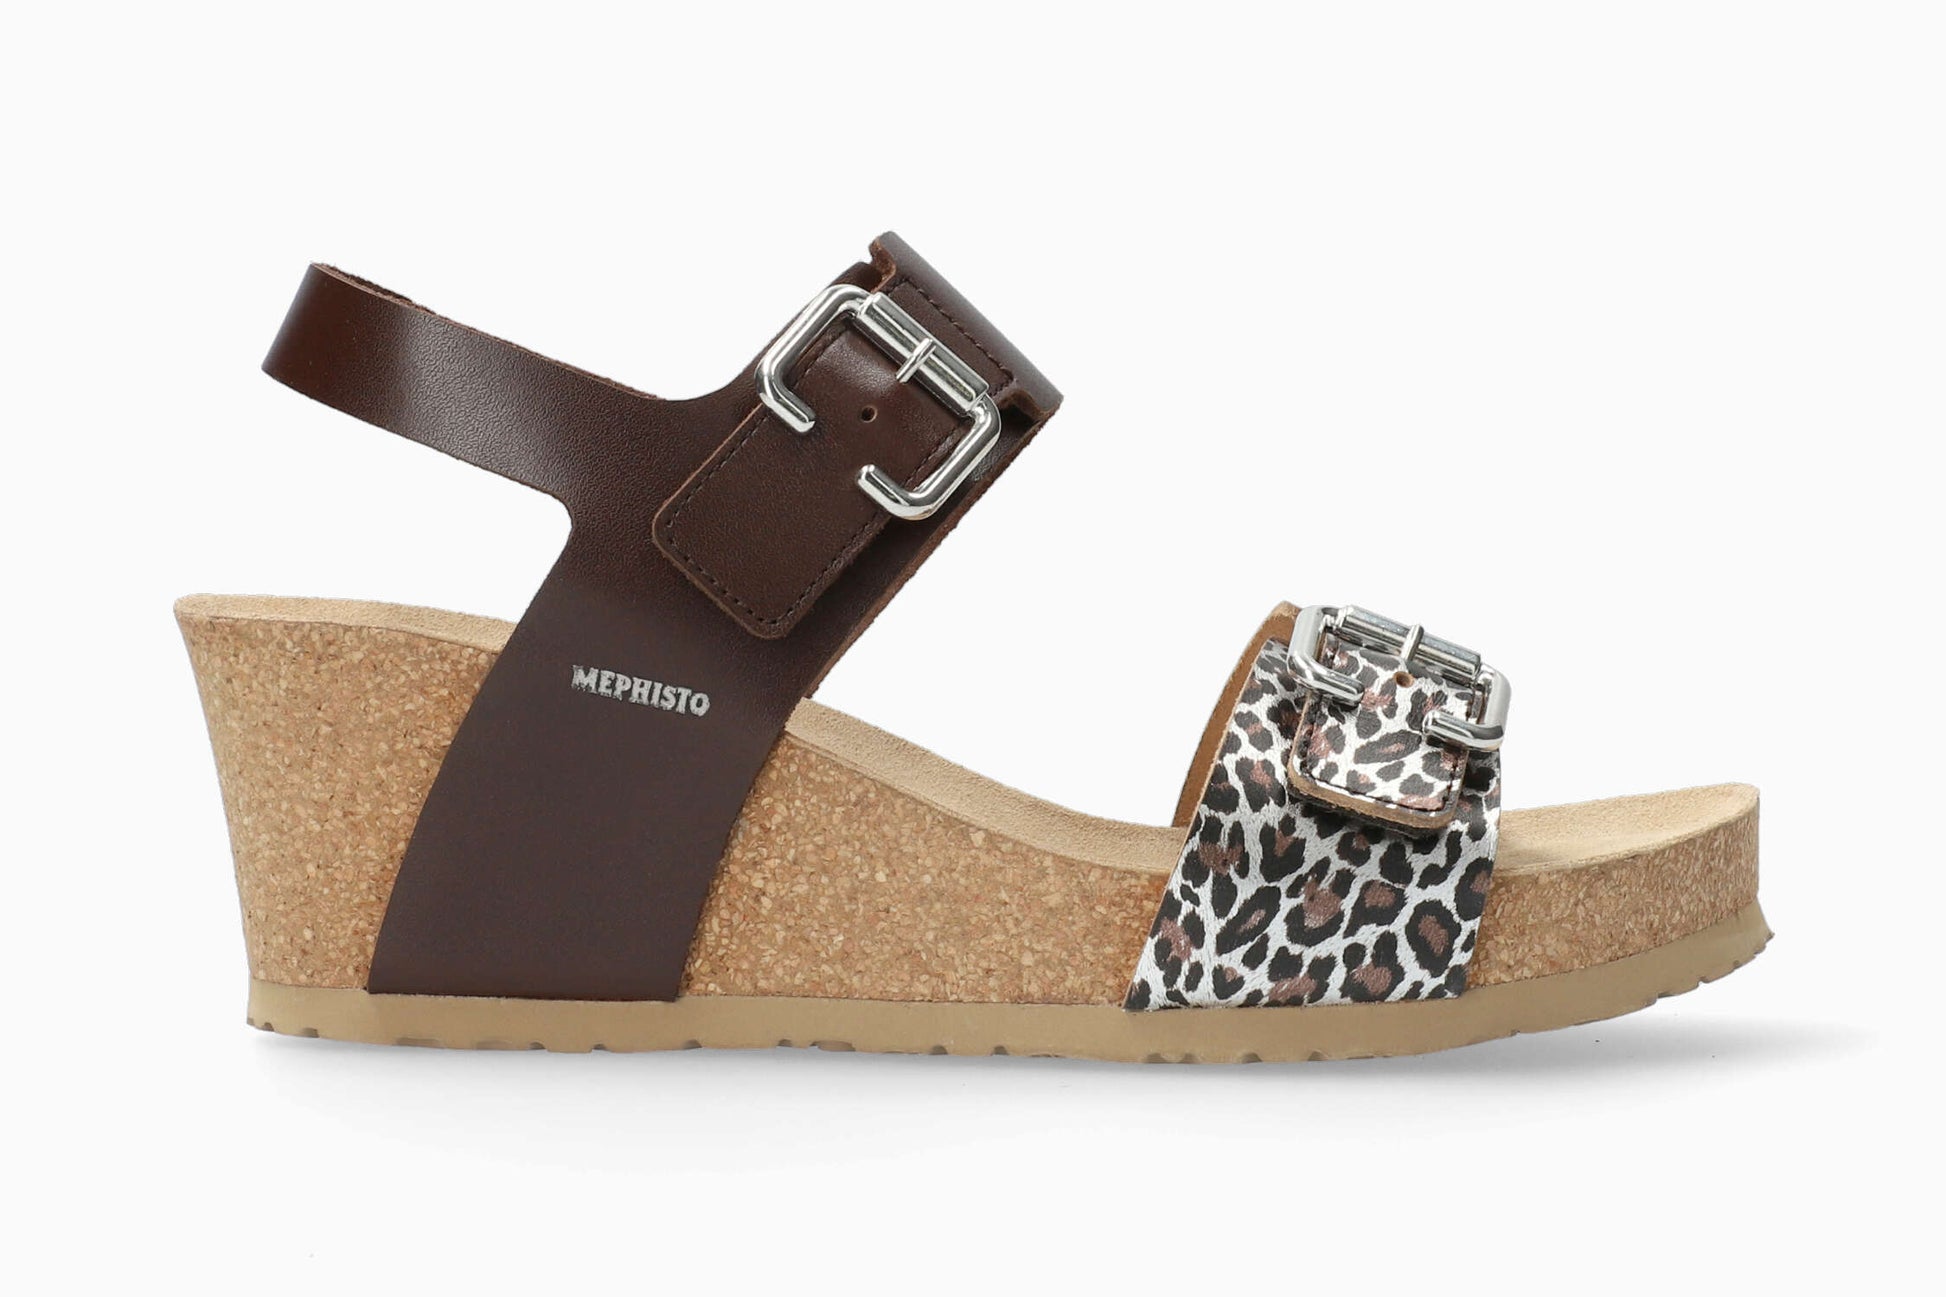 Lissandra Mephisto Women's Wedge Sandals Chestnut